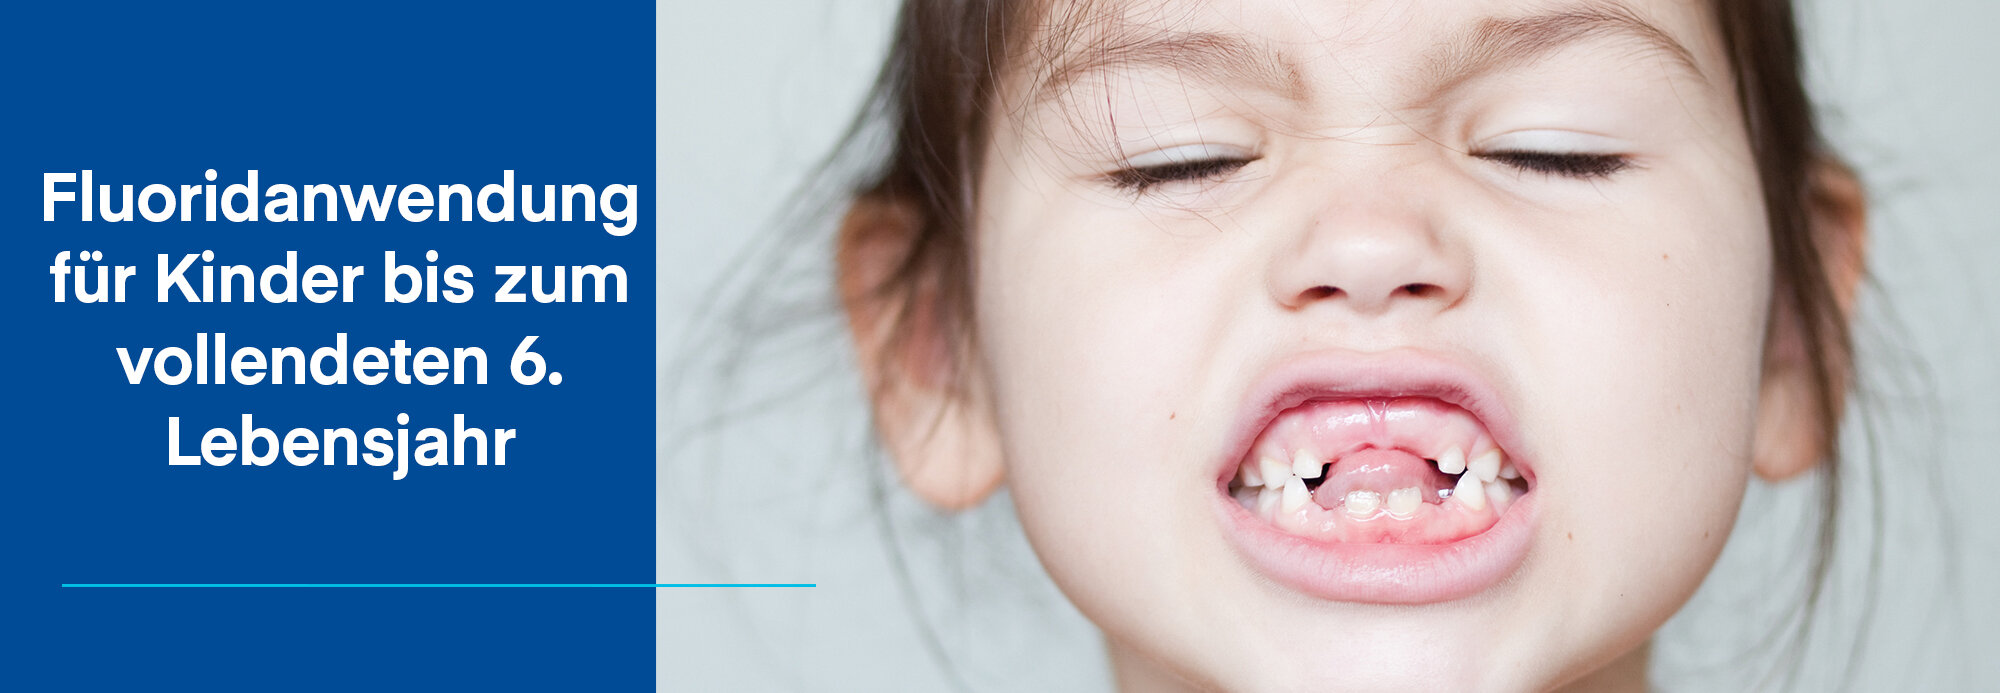 Nahaufnahme Mädchen zeigt Zähne mit vielen Zahnlücken, daneben blauer Hintergrund mit Aufschrift Fluoridanwendung für Kinder bis zum vollendeten 6. Lebensjahr